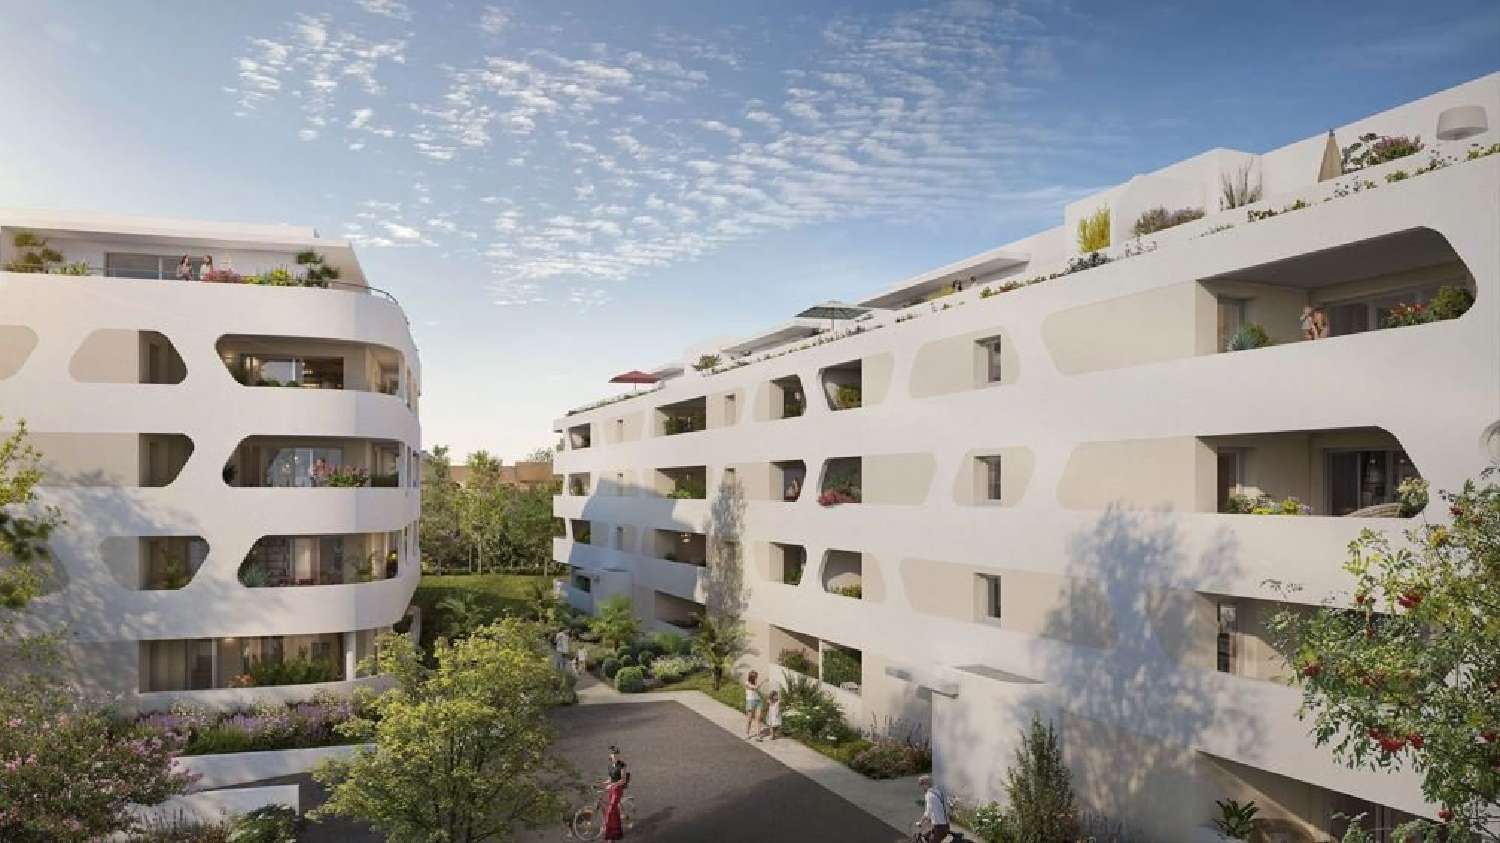  à vendre appartement Béziers Hérault 2